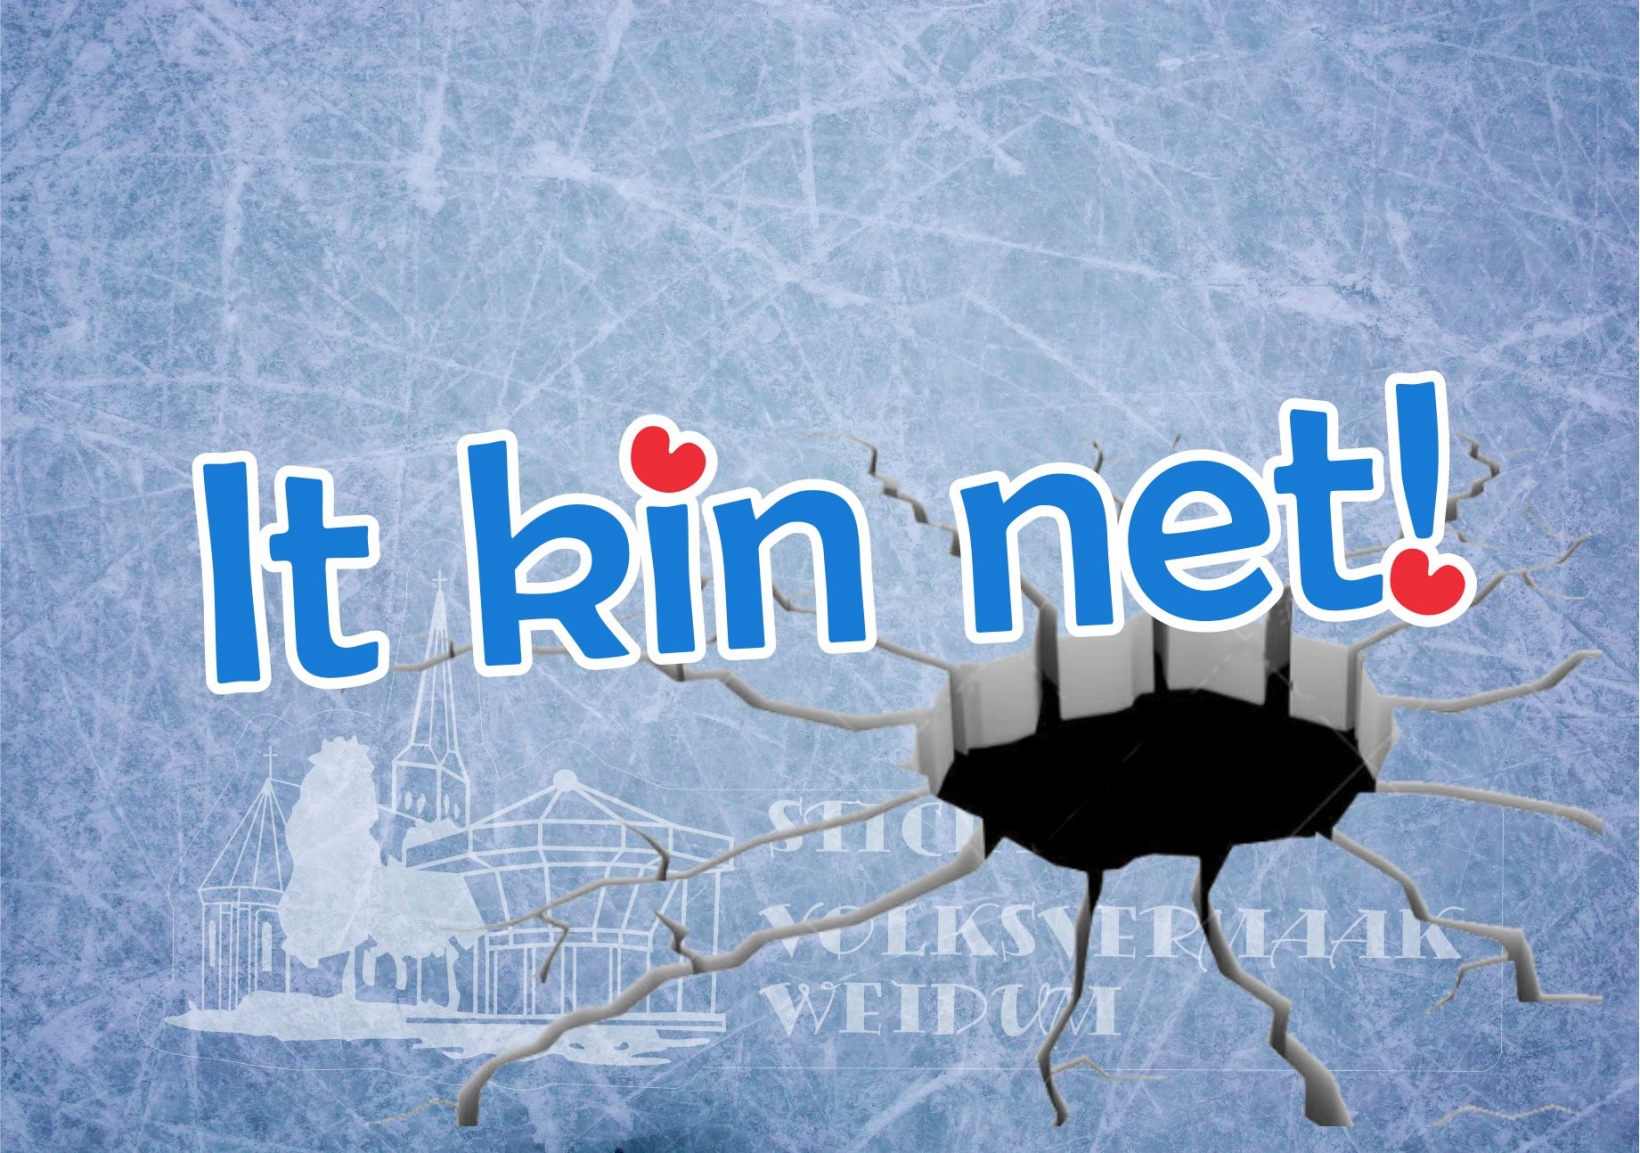 It Kin net